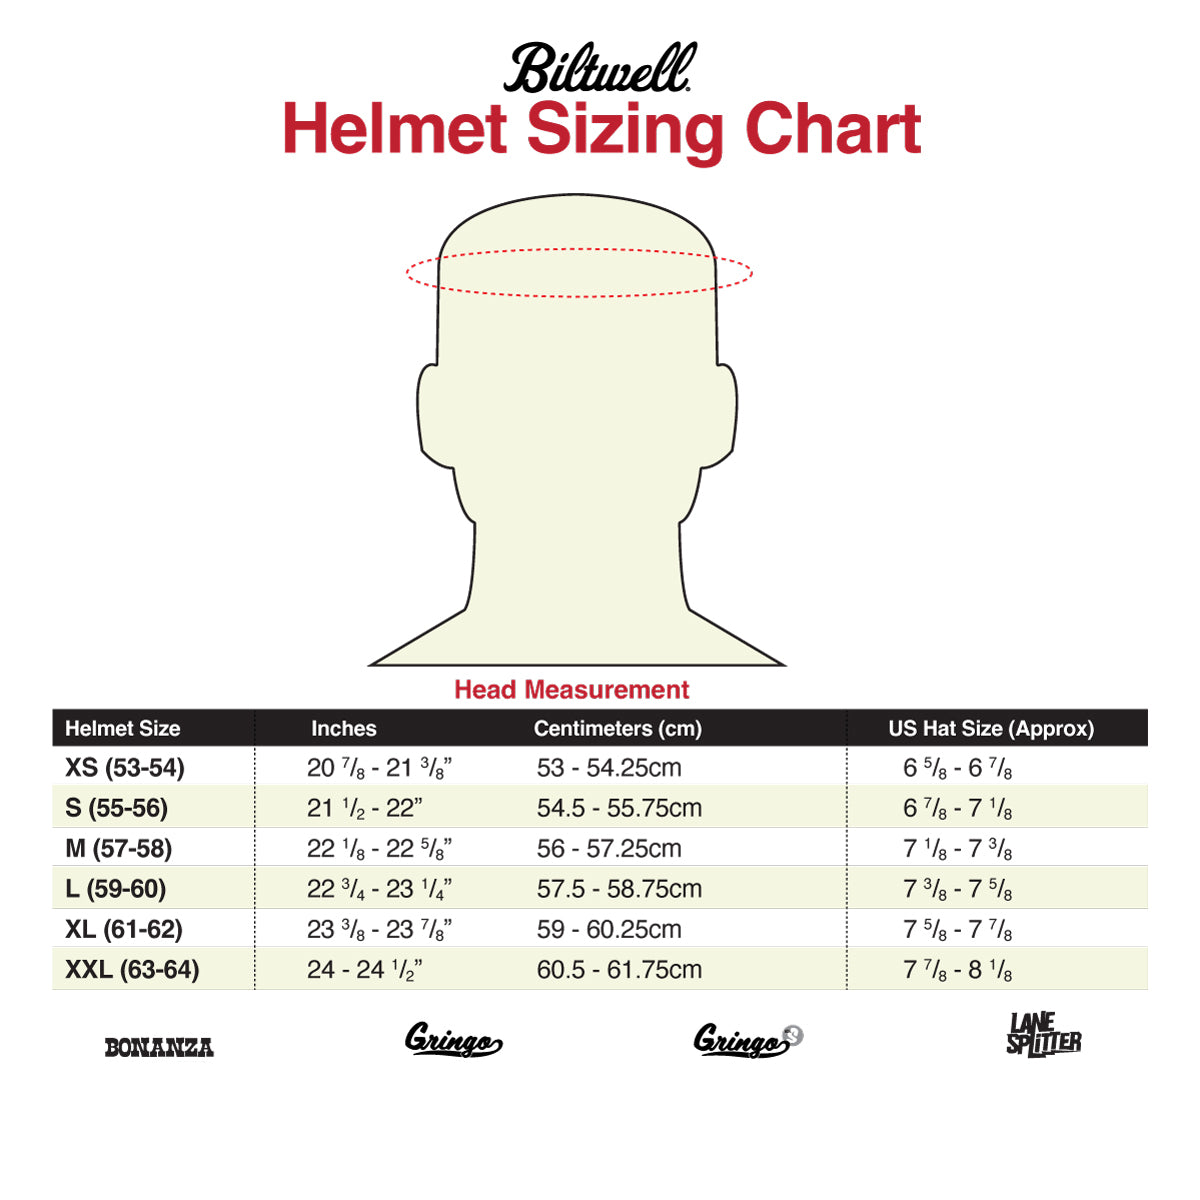 Custom Painted Gringo SV Helmet by Doug Werner